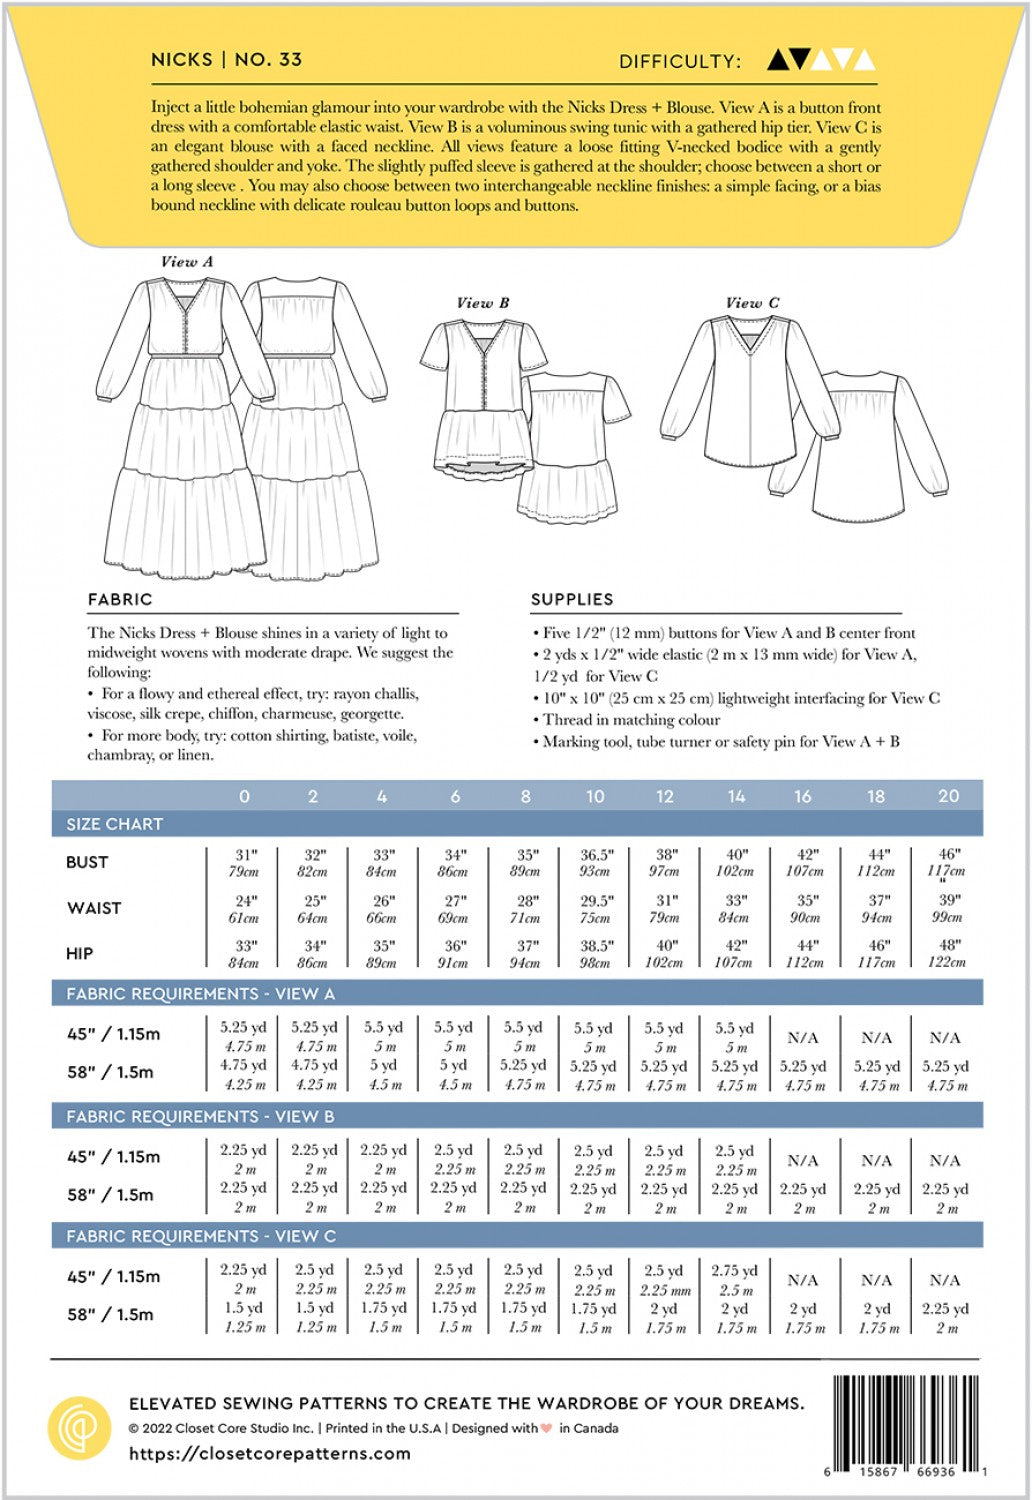 Nicks Dress and Blouse Pattern - By Closet Core Patterns